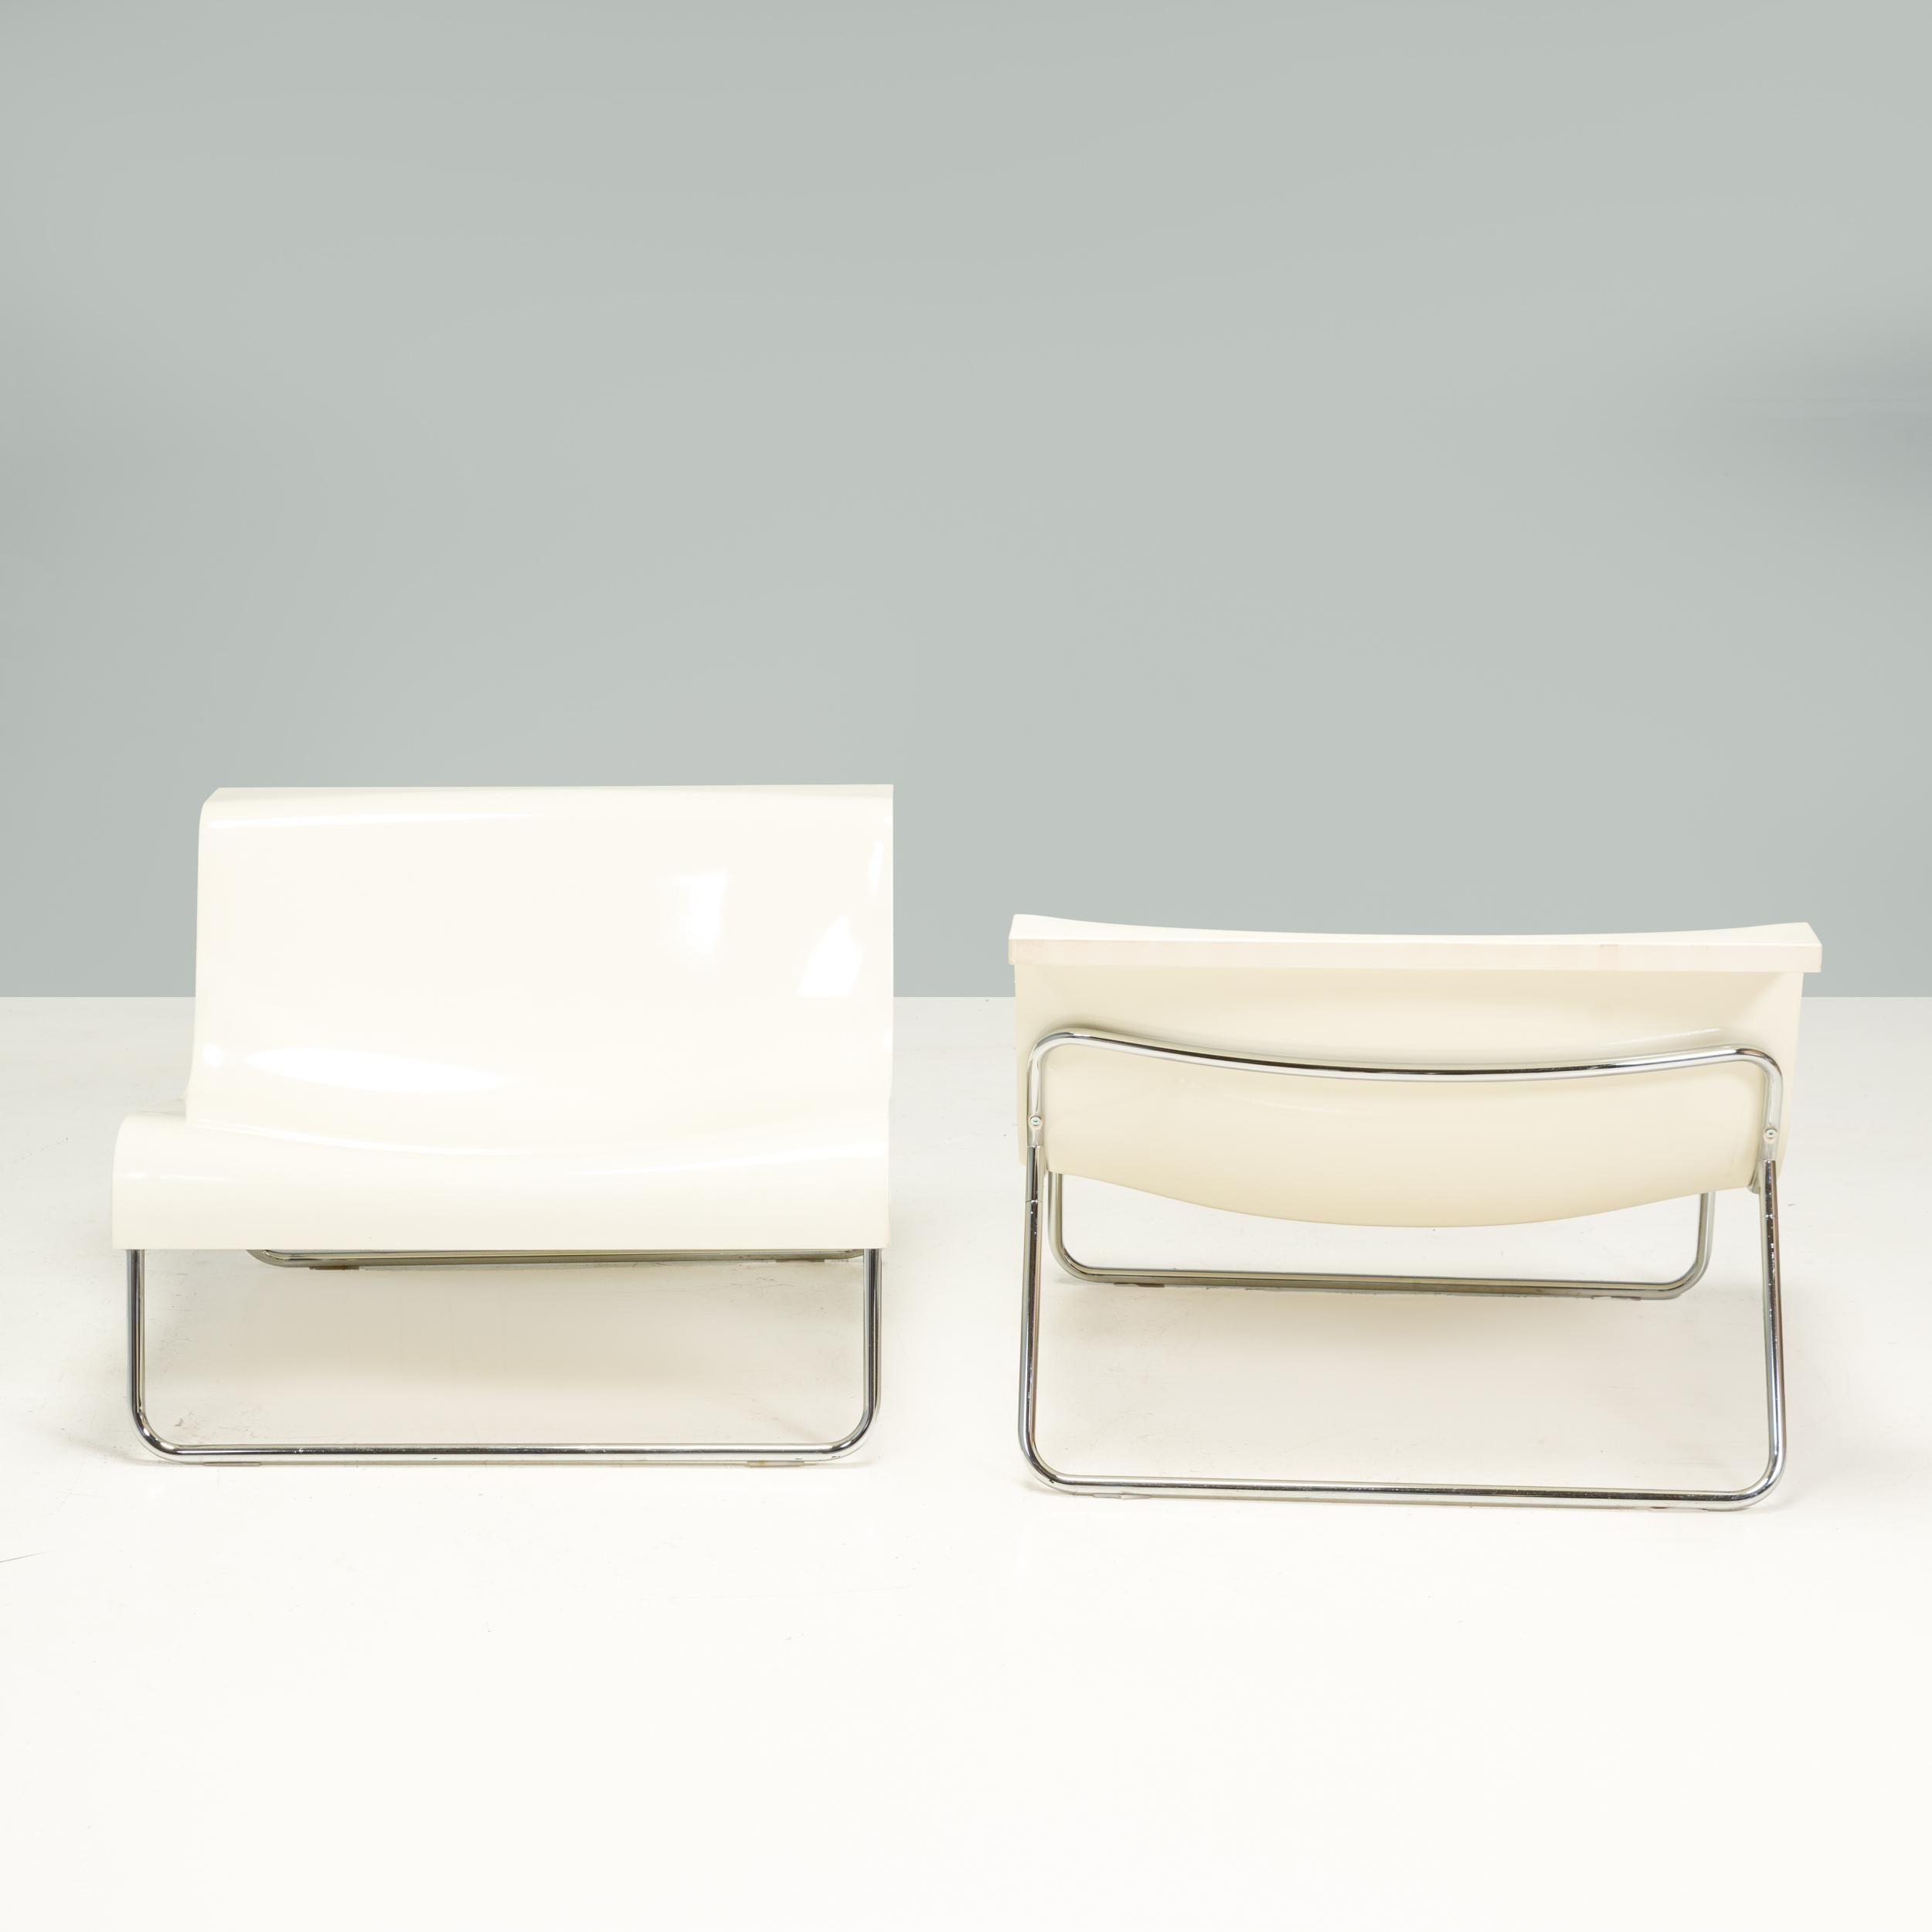 Der ursprünglich vom italienischen Architekten Piero Lissoni für Kartell in den 1990er Jahren entworfene Form-Stuhl ist ein fantastisches Beispiel für die minimalistische Designästhetik der 90er Jahre.

Die Stühle sind aus weißem Polyurethan geformt